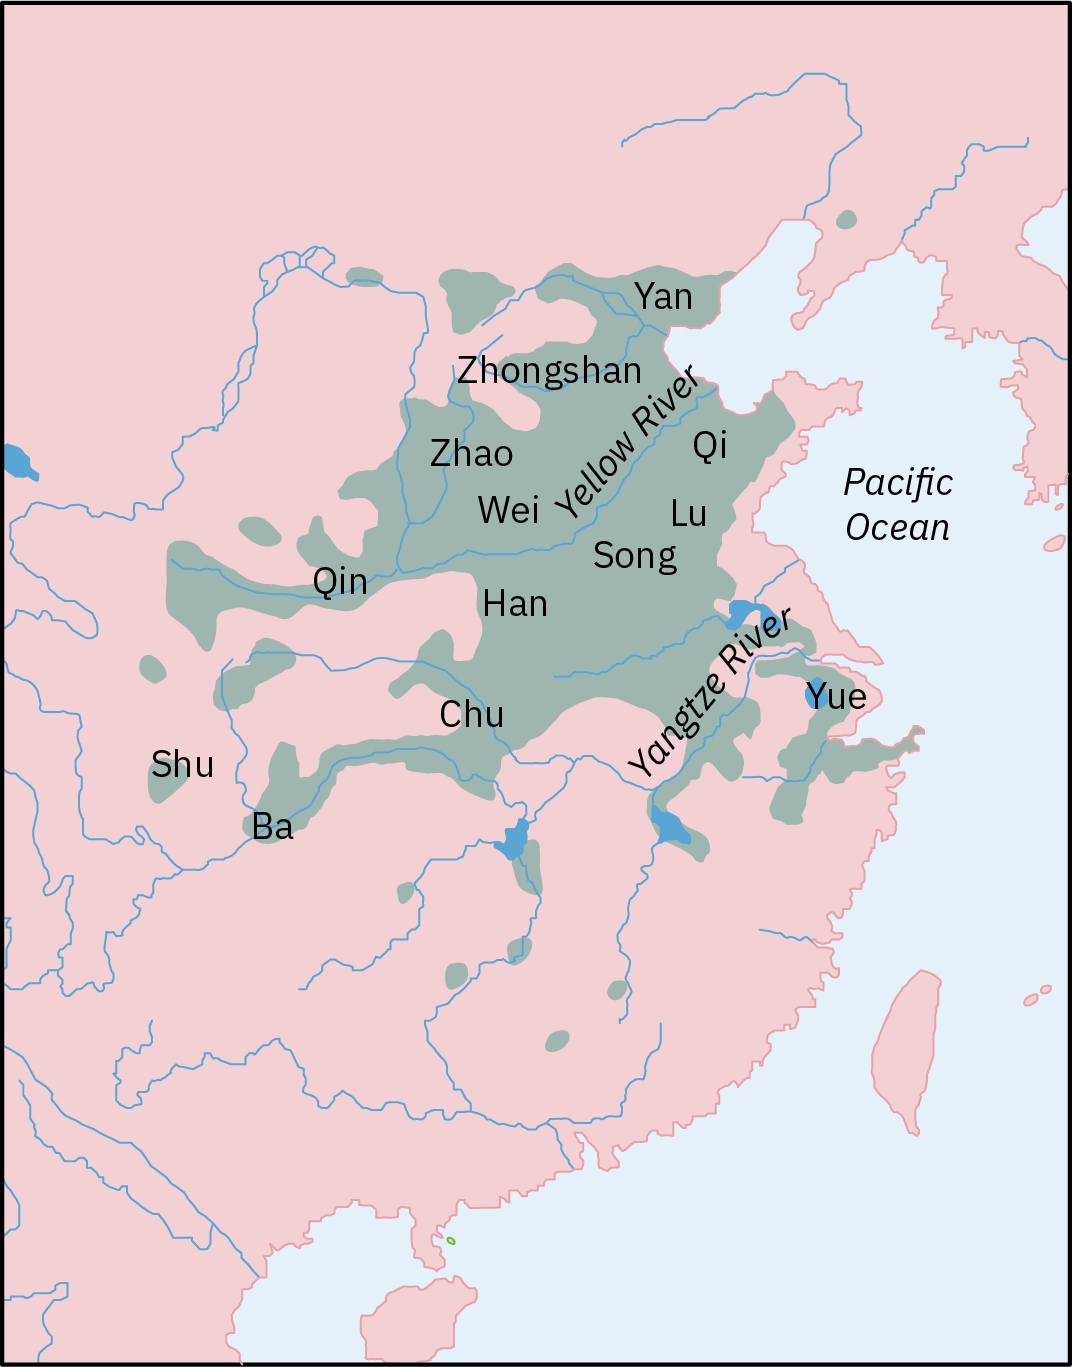 Ramani ya kipindi cha Mataifa ya Vita katika China ya kale (ca. 475-221 KK) inaonyesha sehemu za China zenye machafuko ya kijamii na ugomvi.